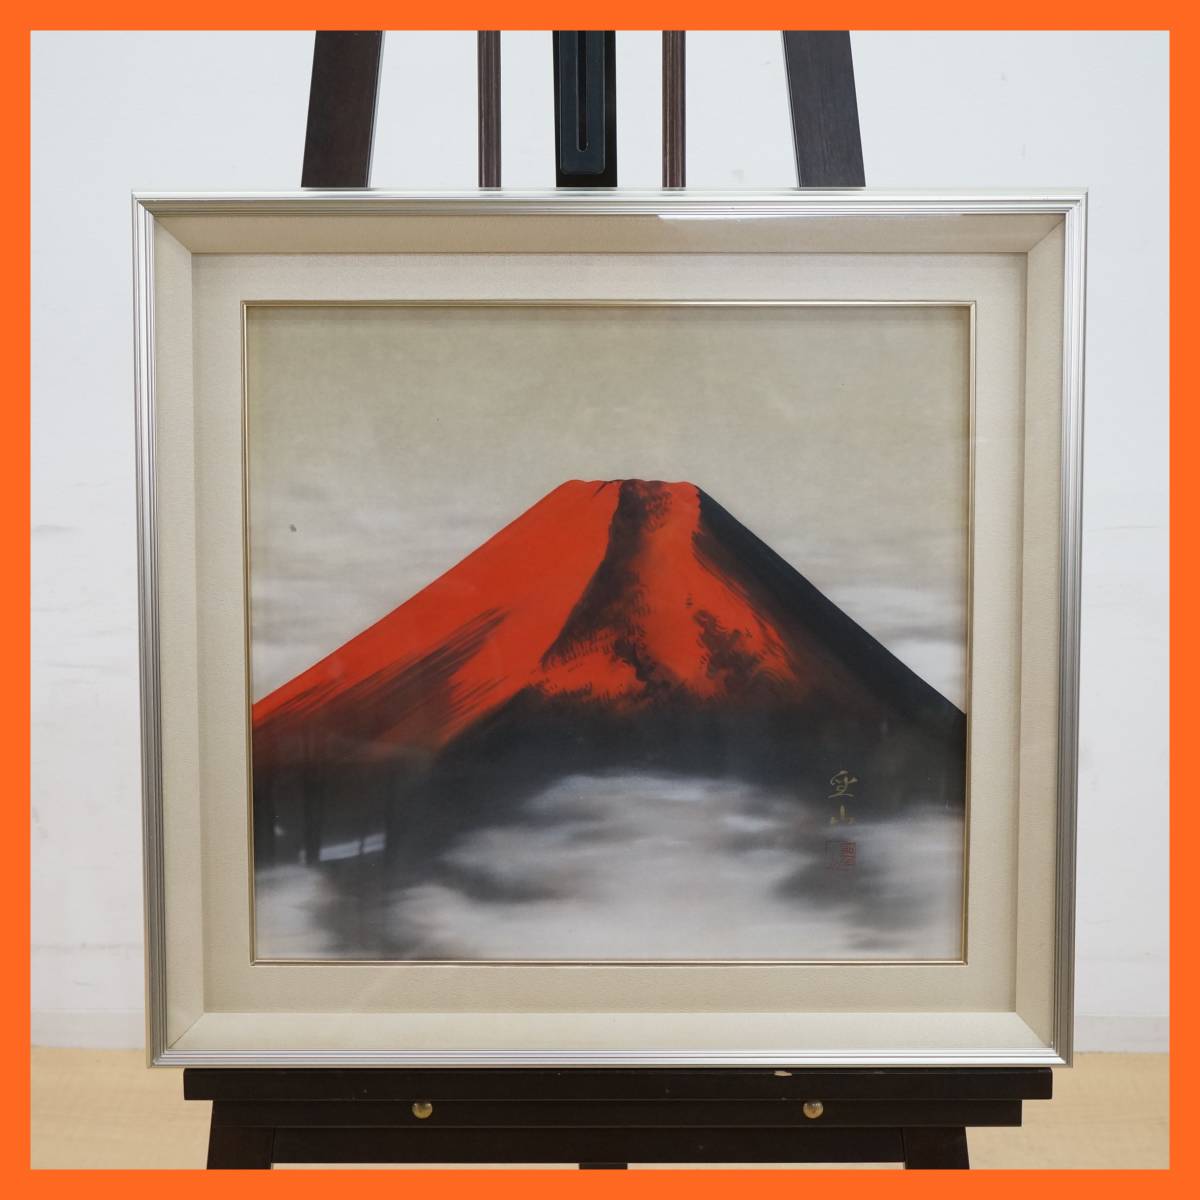 Toha: [Japanisches Gemälde] Authentisches Gemälde von Seizan Nishioka Gemälde des roten Fuji-Berges Fuji. Rahmenmaße ca. 64, 1 cm x 60, 3 cm Kunstwerk, gerahmter Artikel, glückverheißendes Bild, Innenbereich, ★Kostenloser Versand★, Malerei, Japanische Malerei, Andere